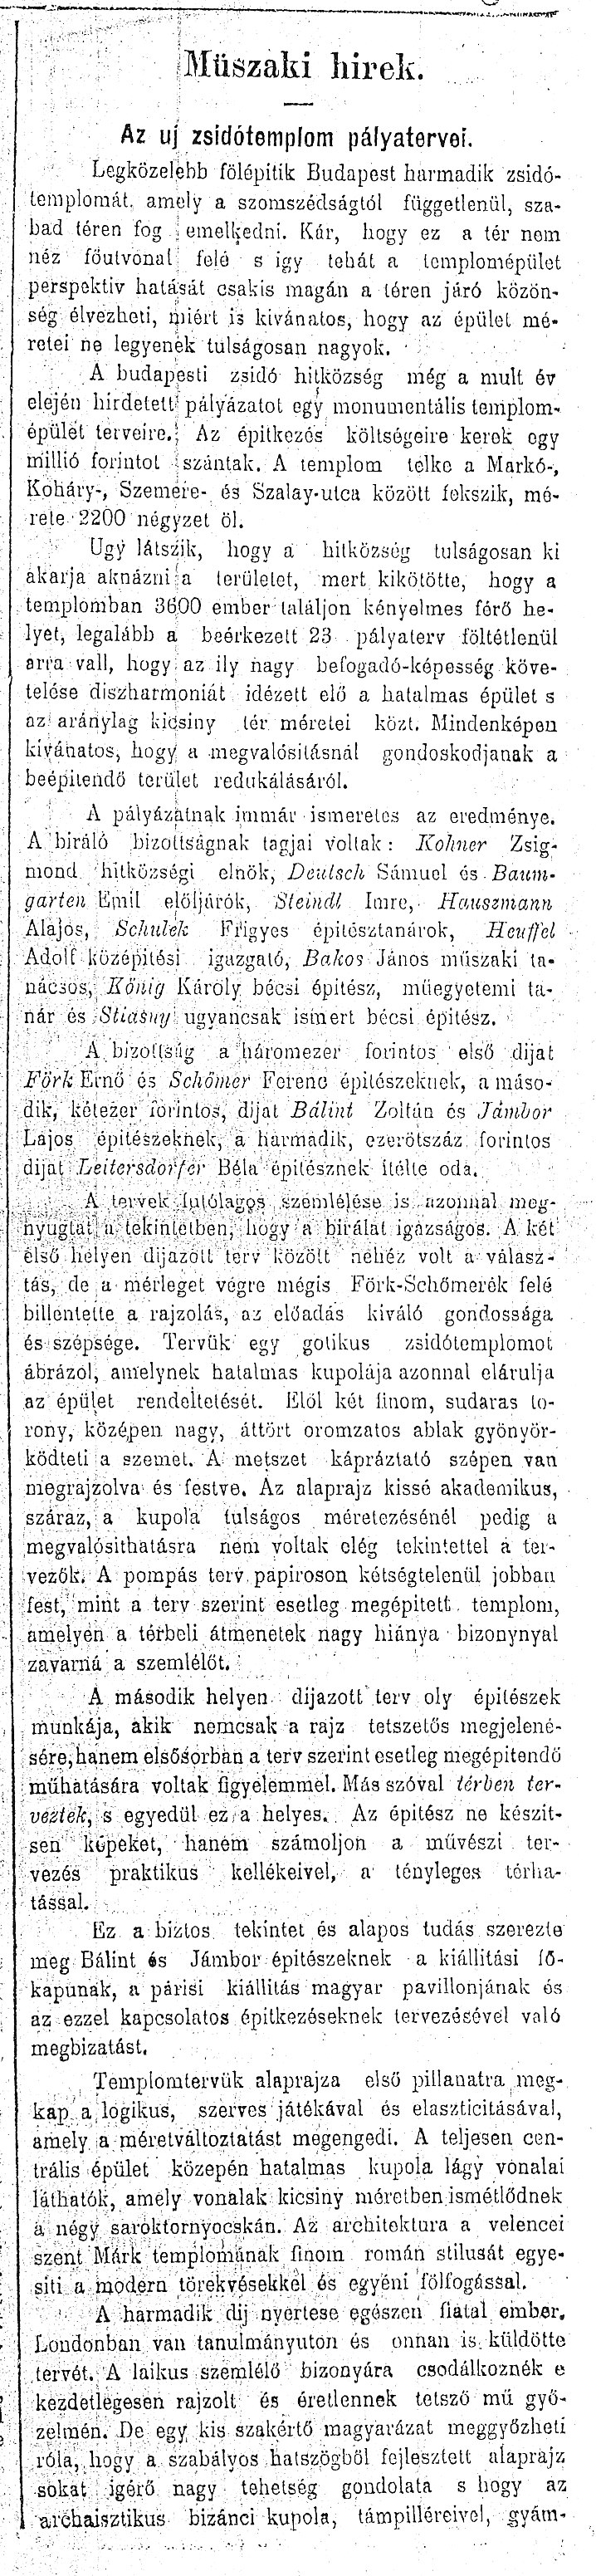 002_Pesti Hírlap, 1899. III. 8. 5. p.